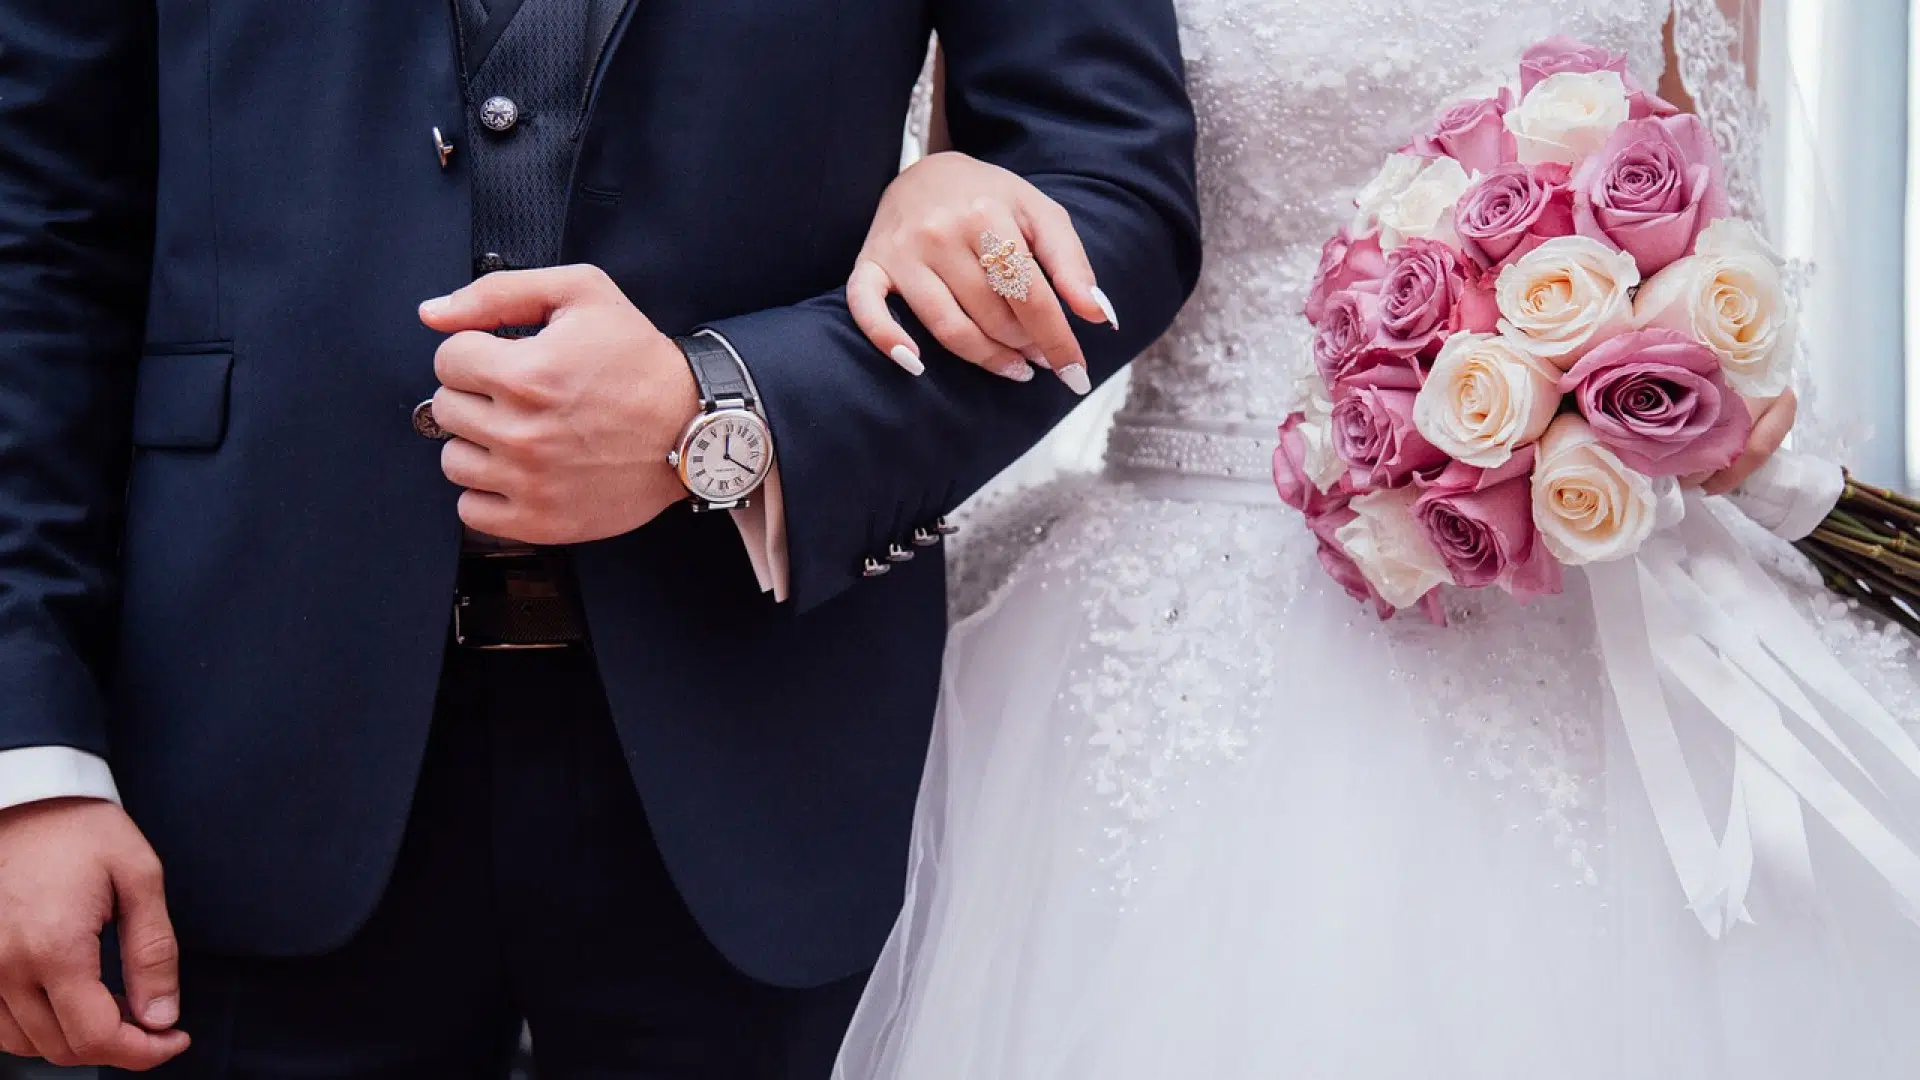 Les avantages du mariage et du Pacs sur le plan légal